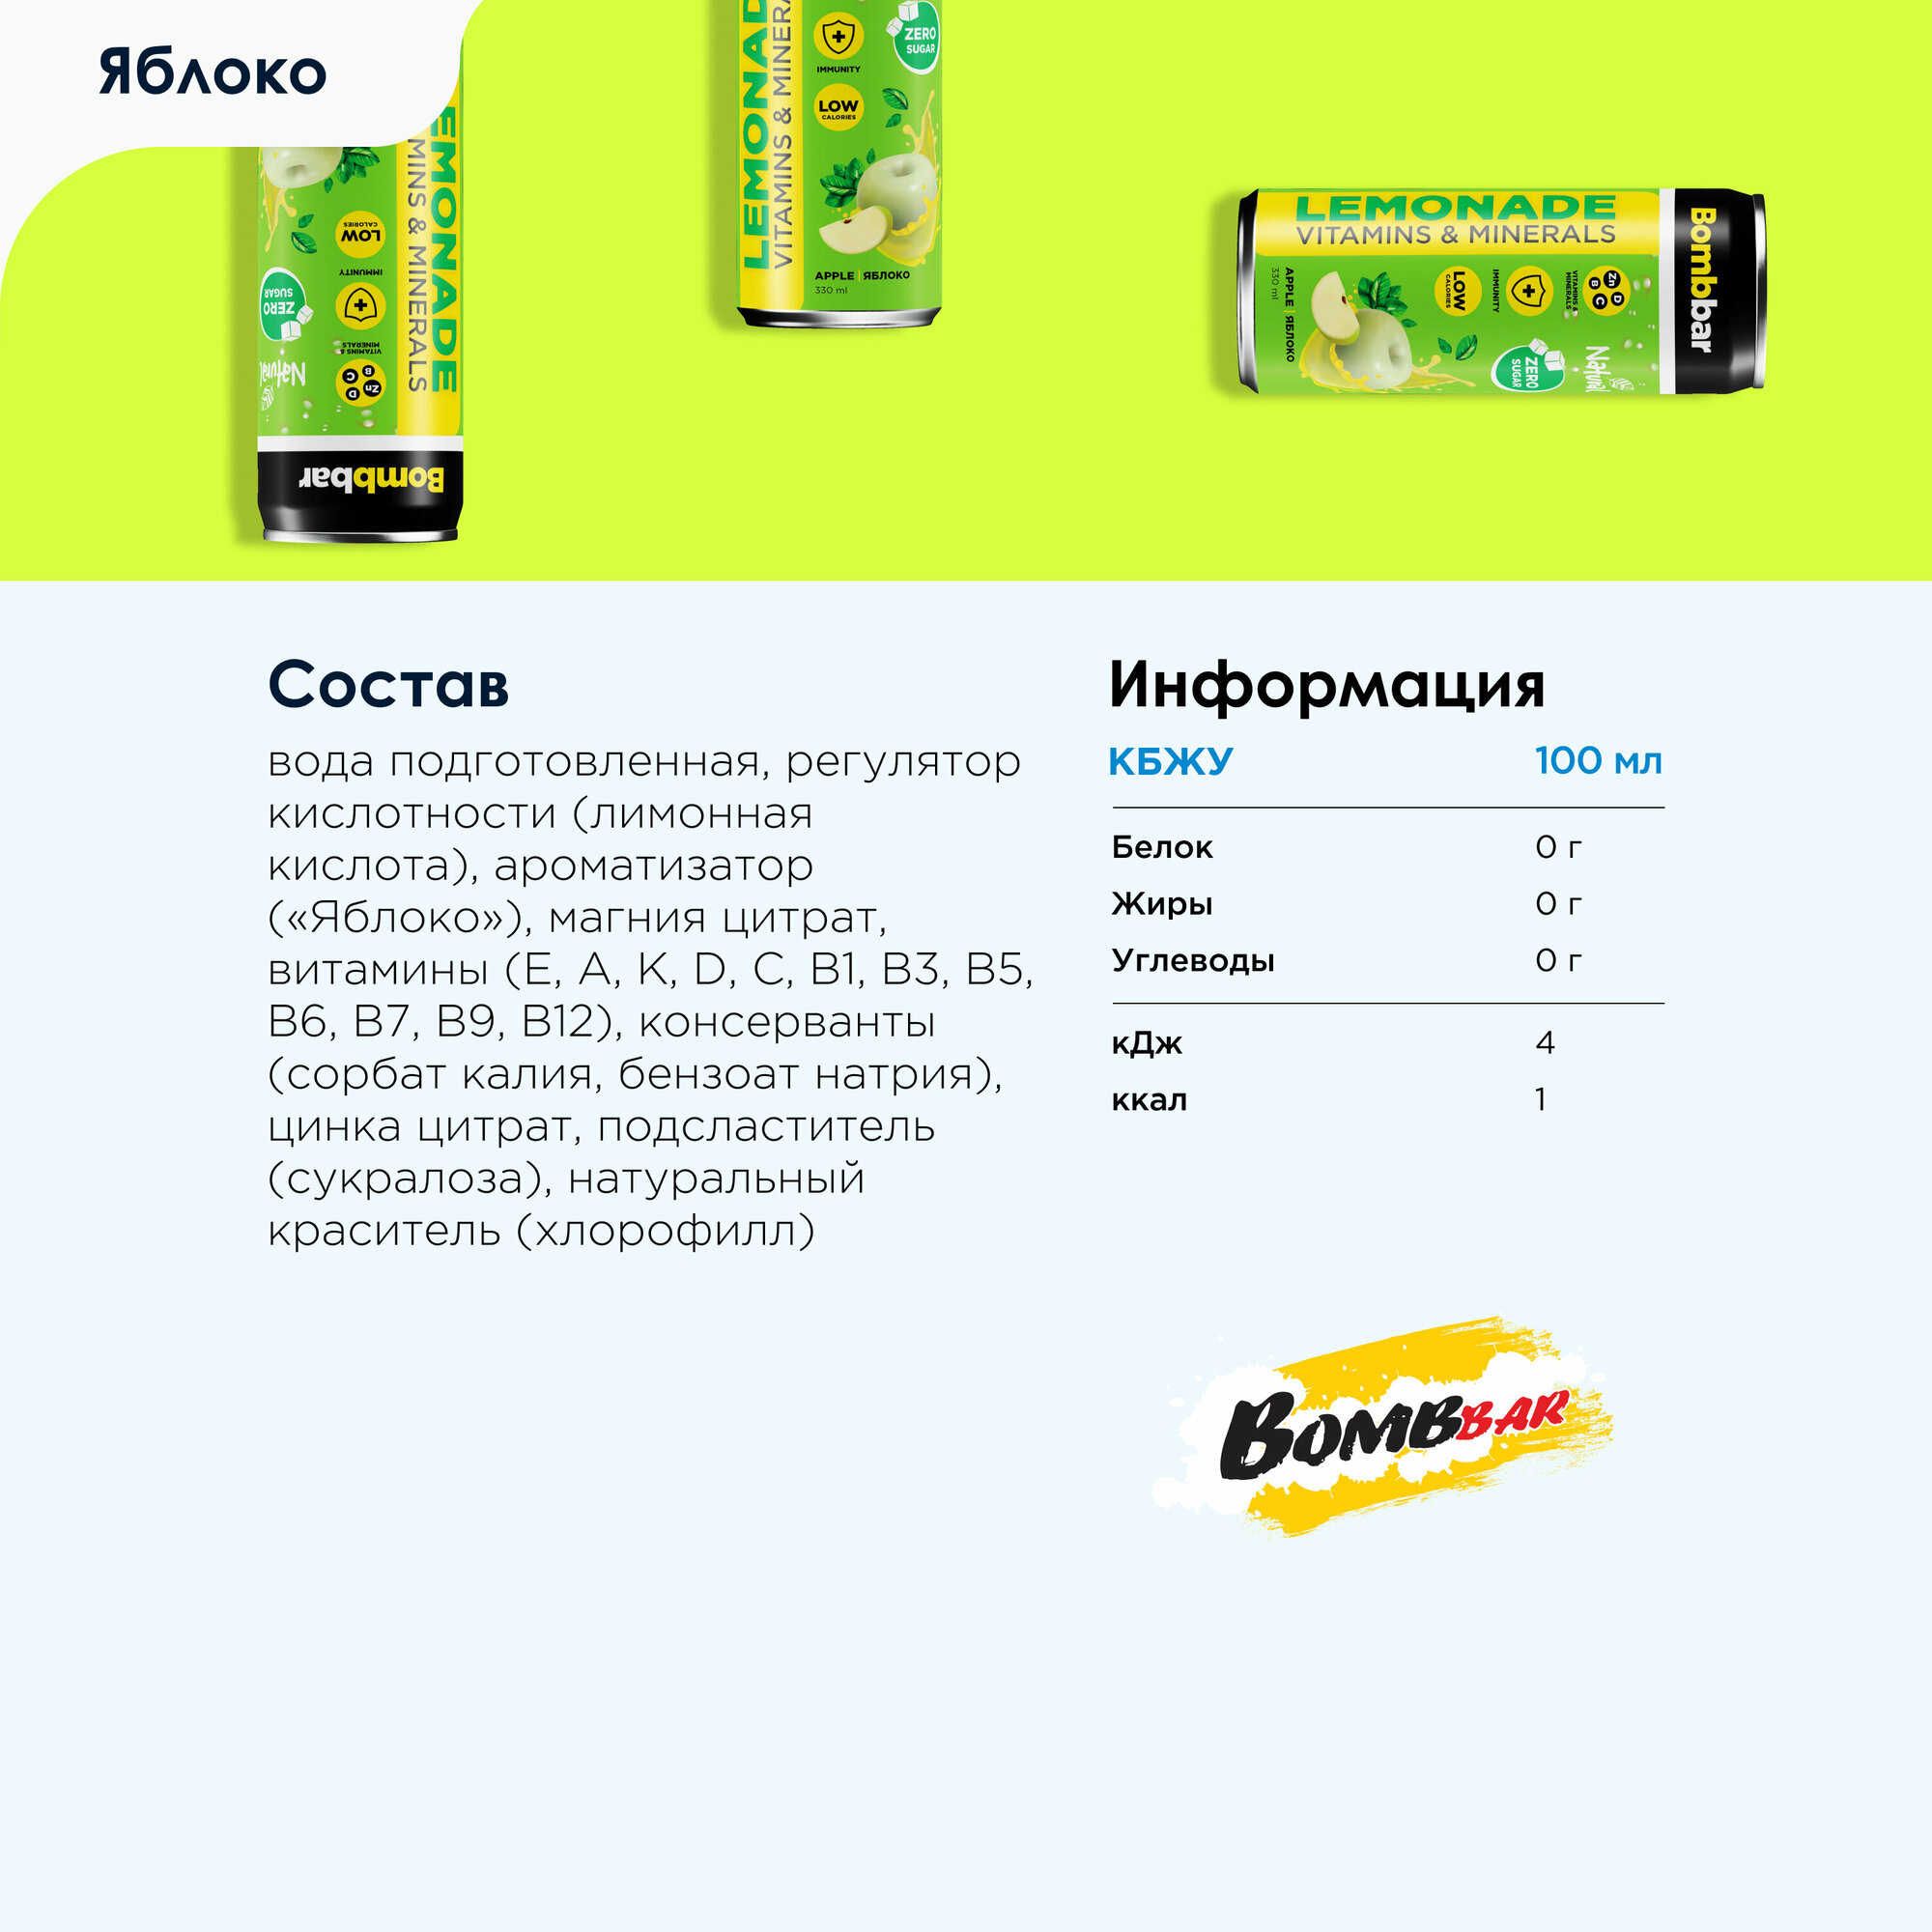 Bombbar Витаминизированный лимонад "Яблоко" без сахара, 6 шт х 330мл